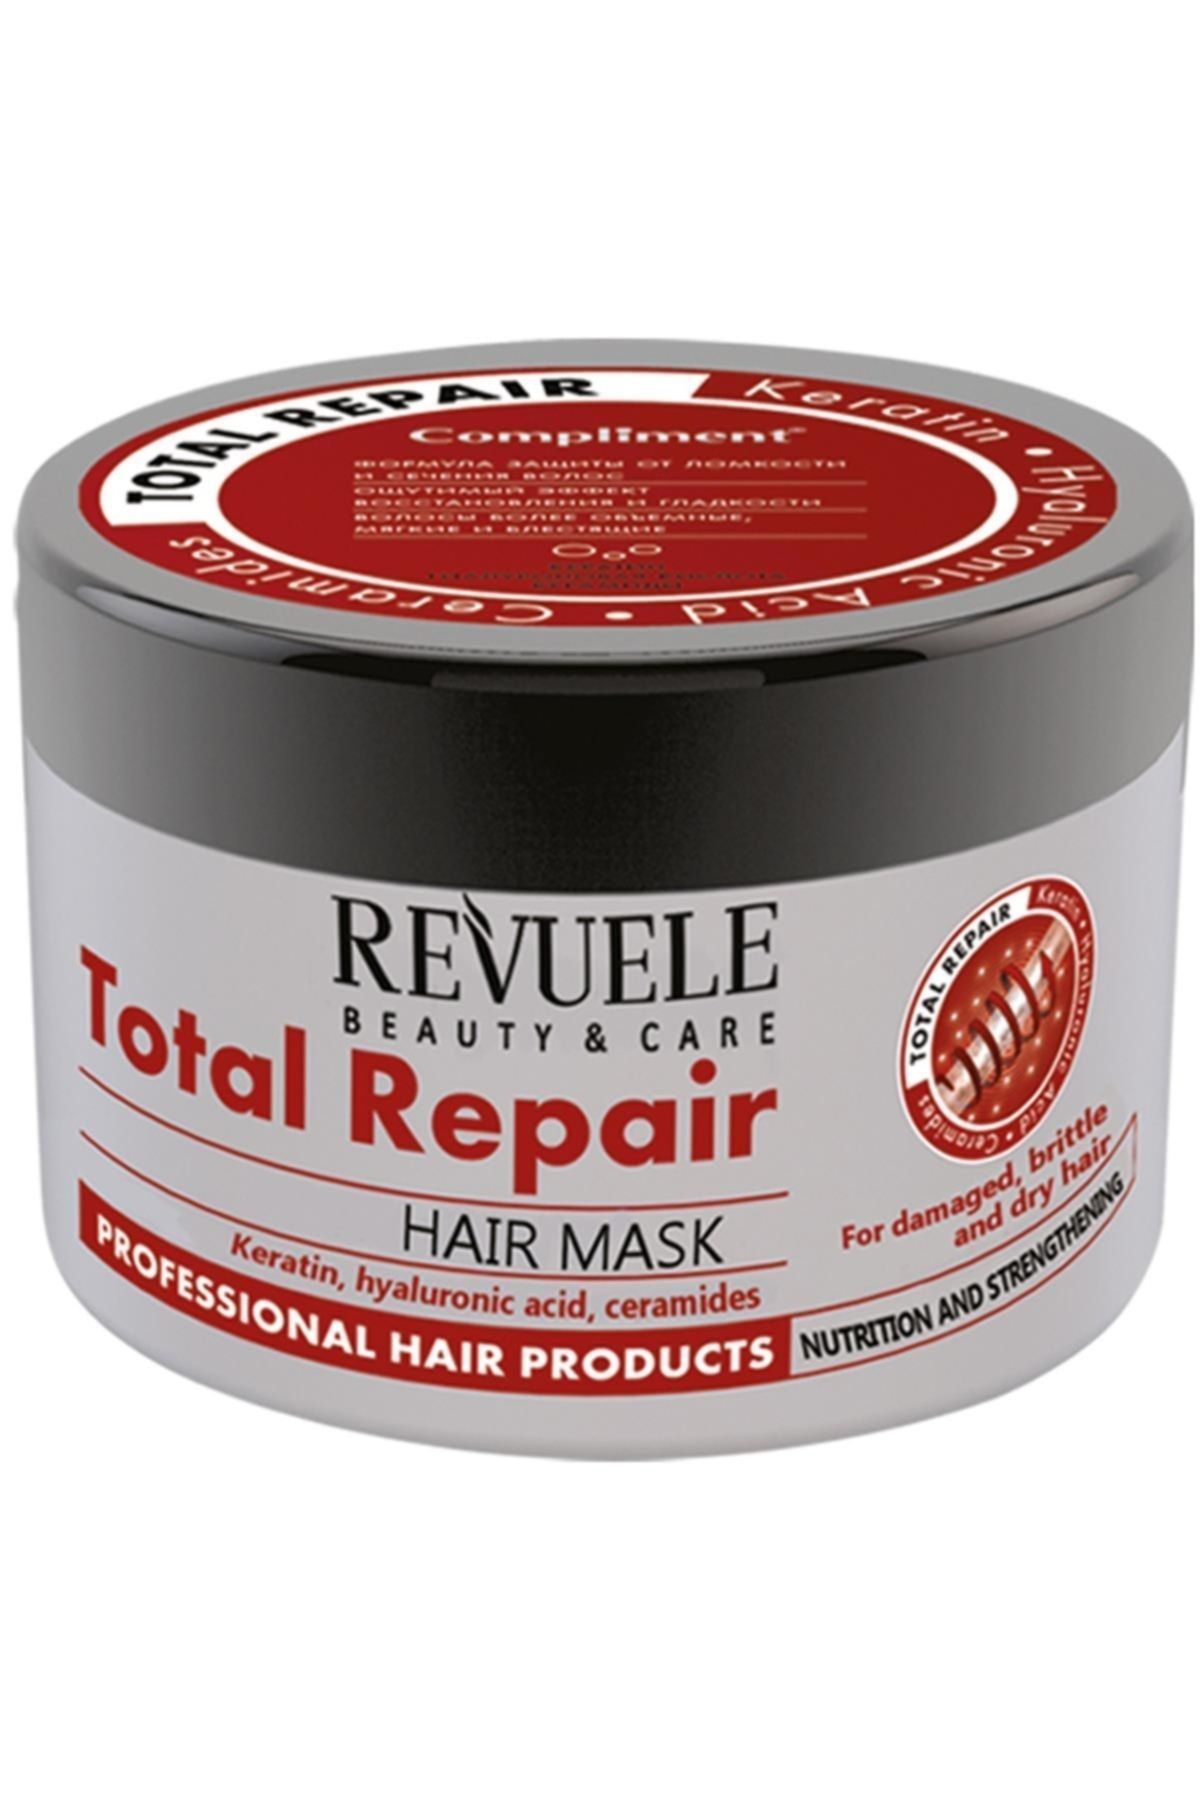 Total repair маска для волос. Маска compliment total Repair. Compliment маска для волос. Маска для волос total Repair. Маска для волос комплимент total Repair с кератином.